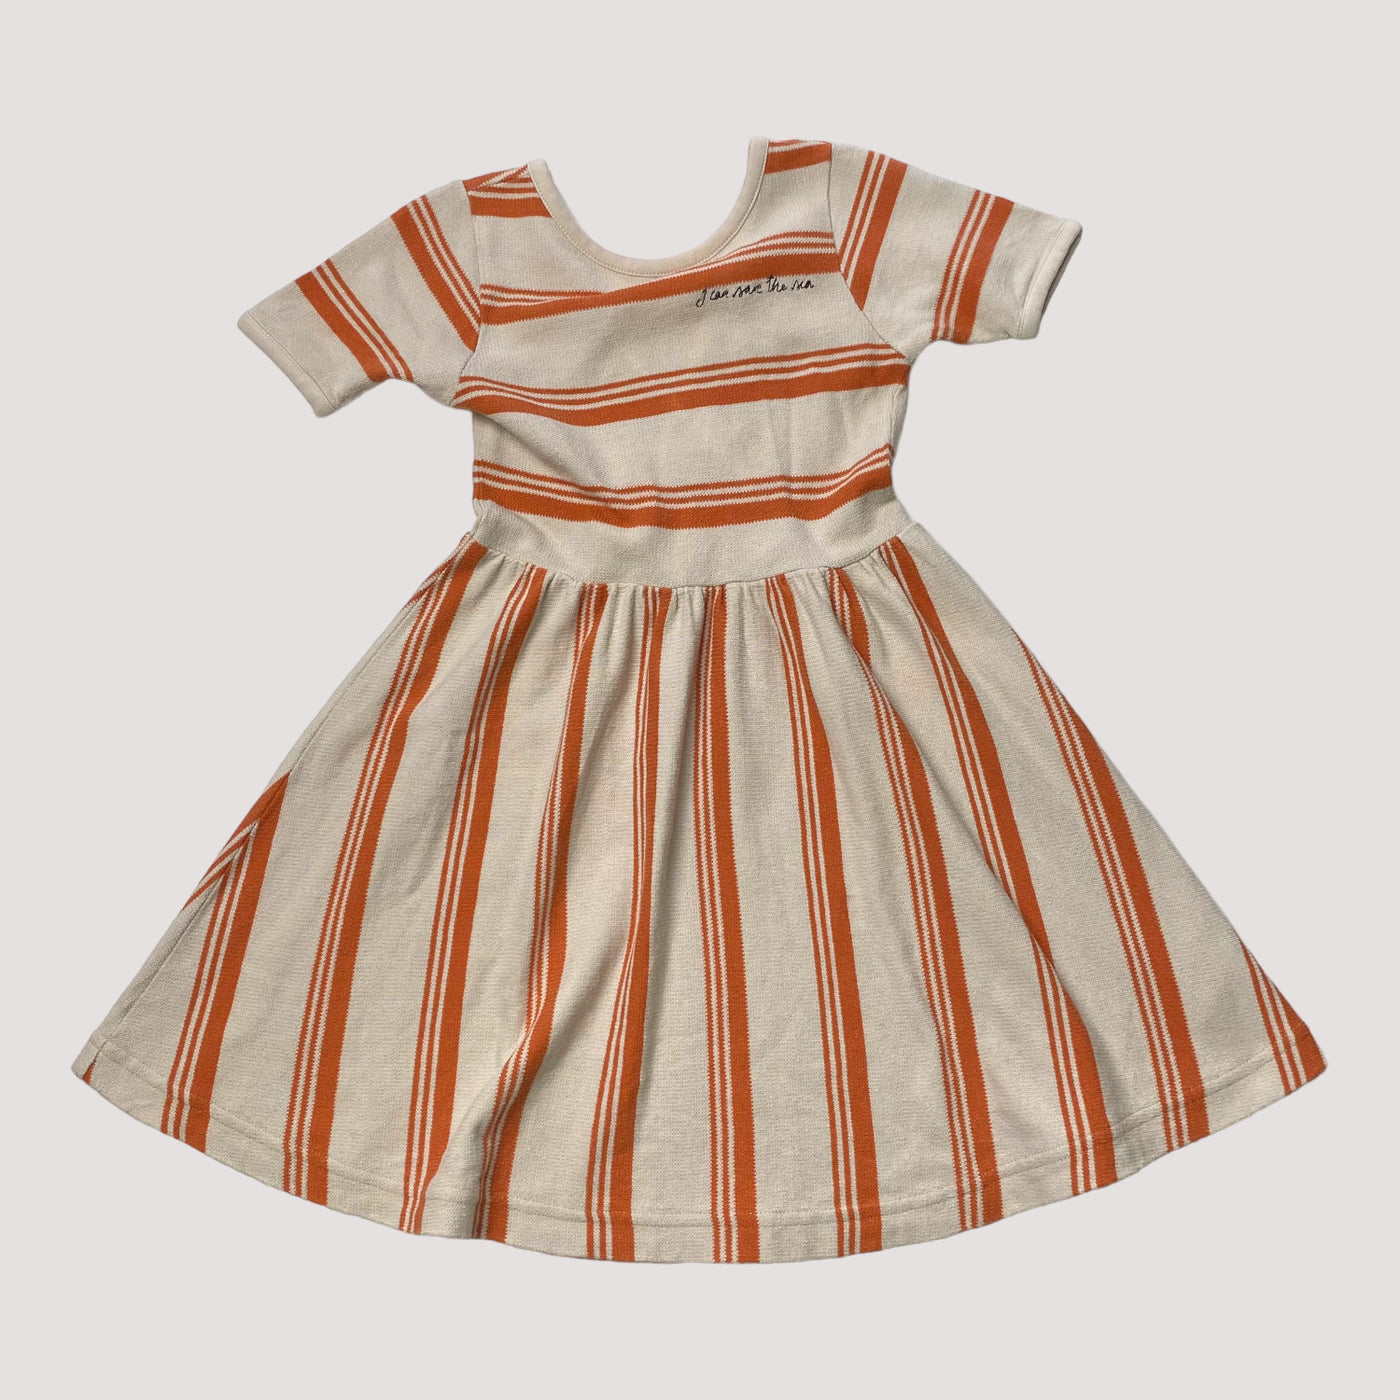 Mainio dress, stripes | 98/104cm